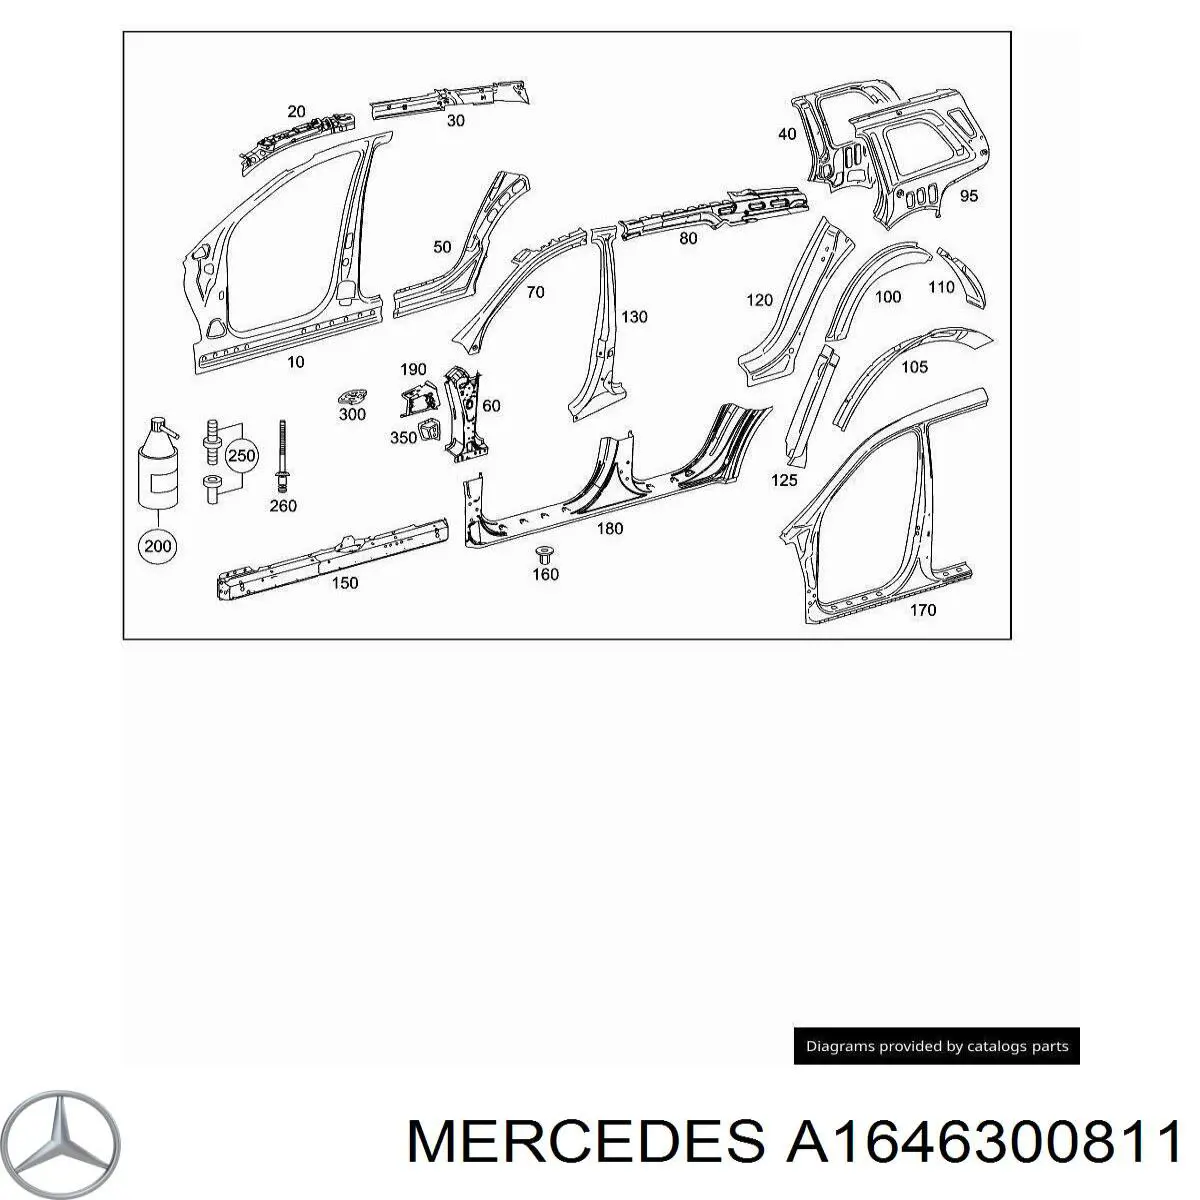 A1646300811 Mercedes pilar, carrocería, central derecha